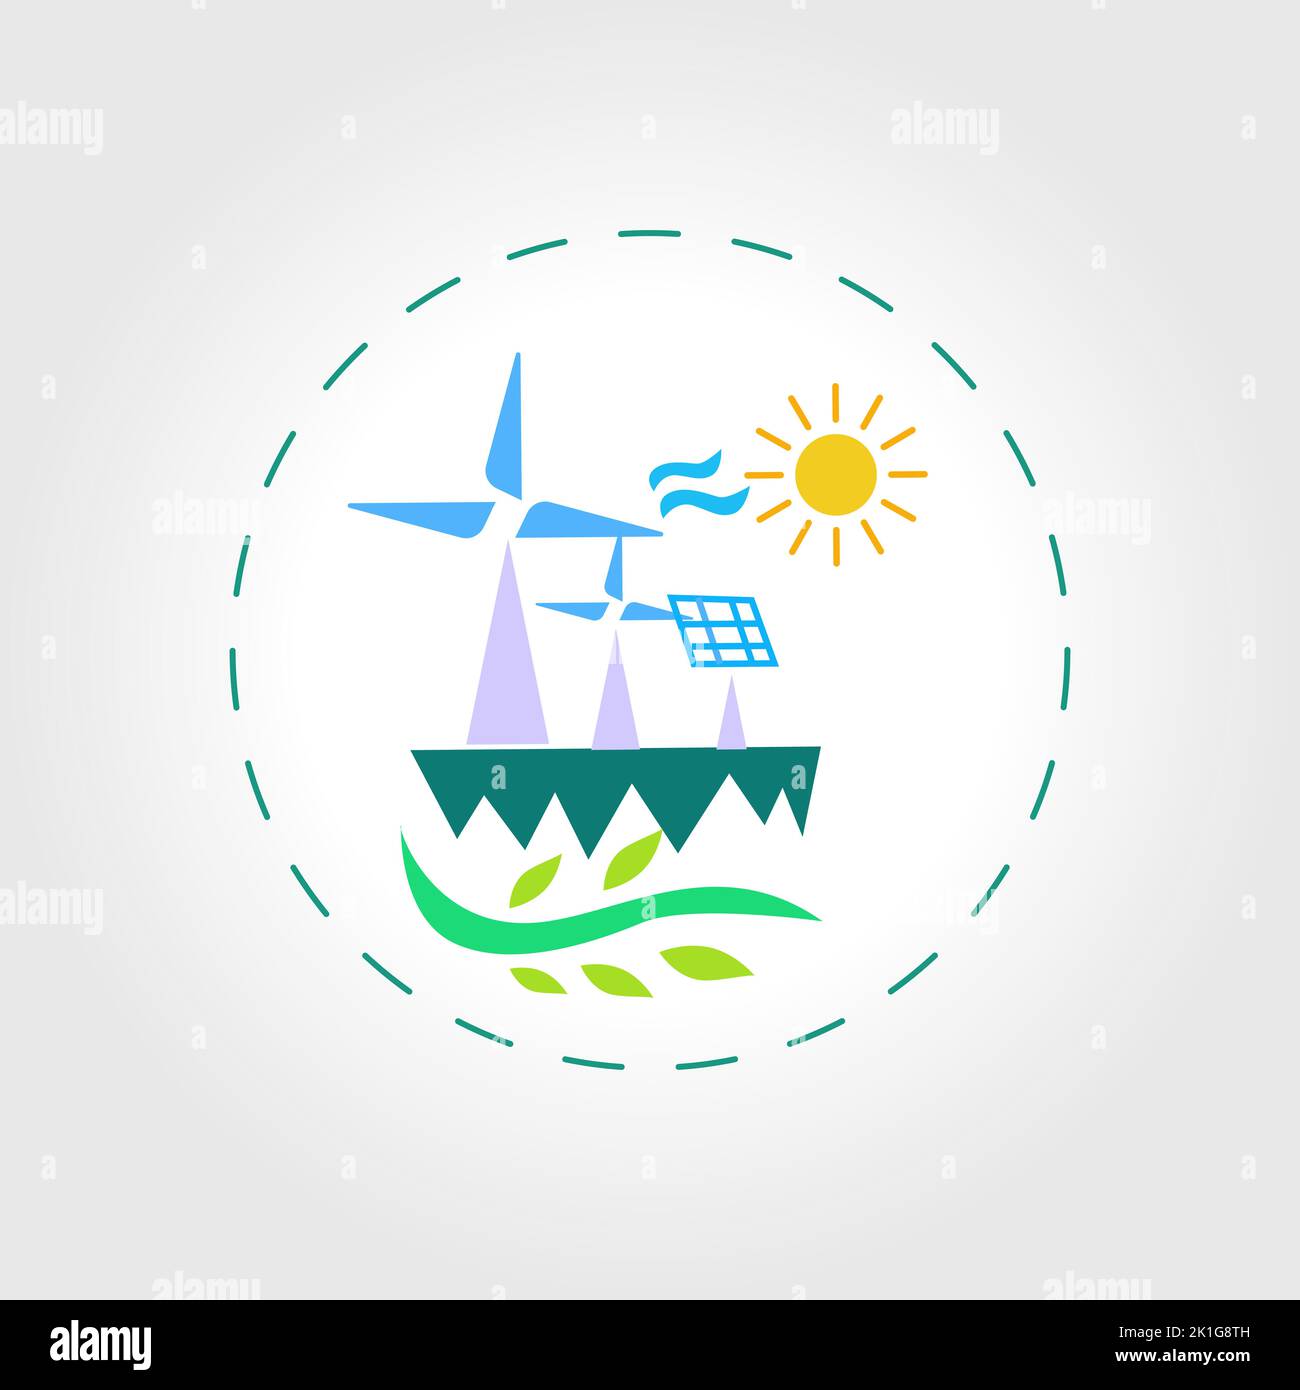 Illustrazione del vettore di energia eolica. Energia alternativa verde nel concetto vettoriale, evoluzione dell'energia rinnovabile concetto di ecologizzazione del mondo Illustrazione Vettoriale